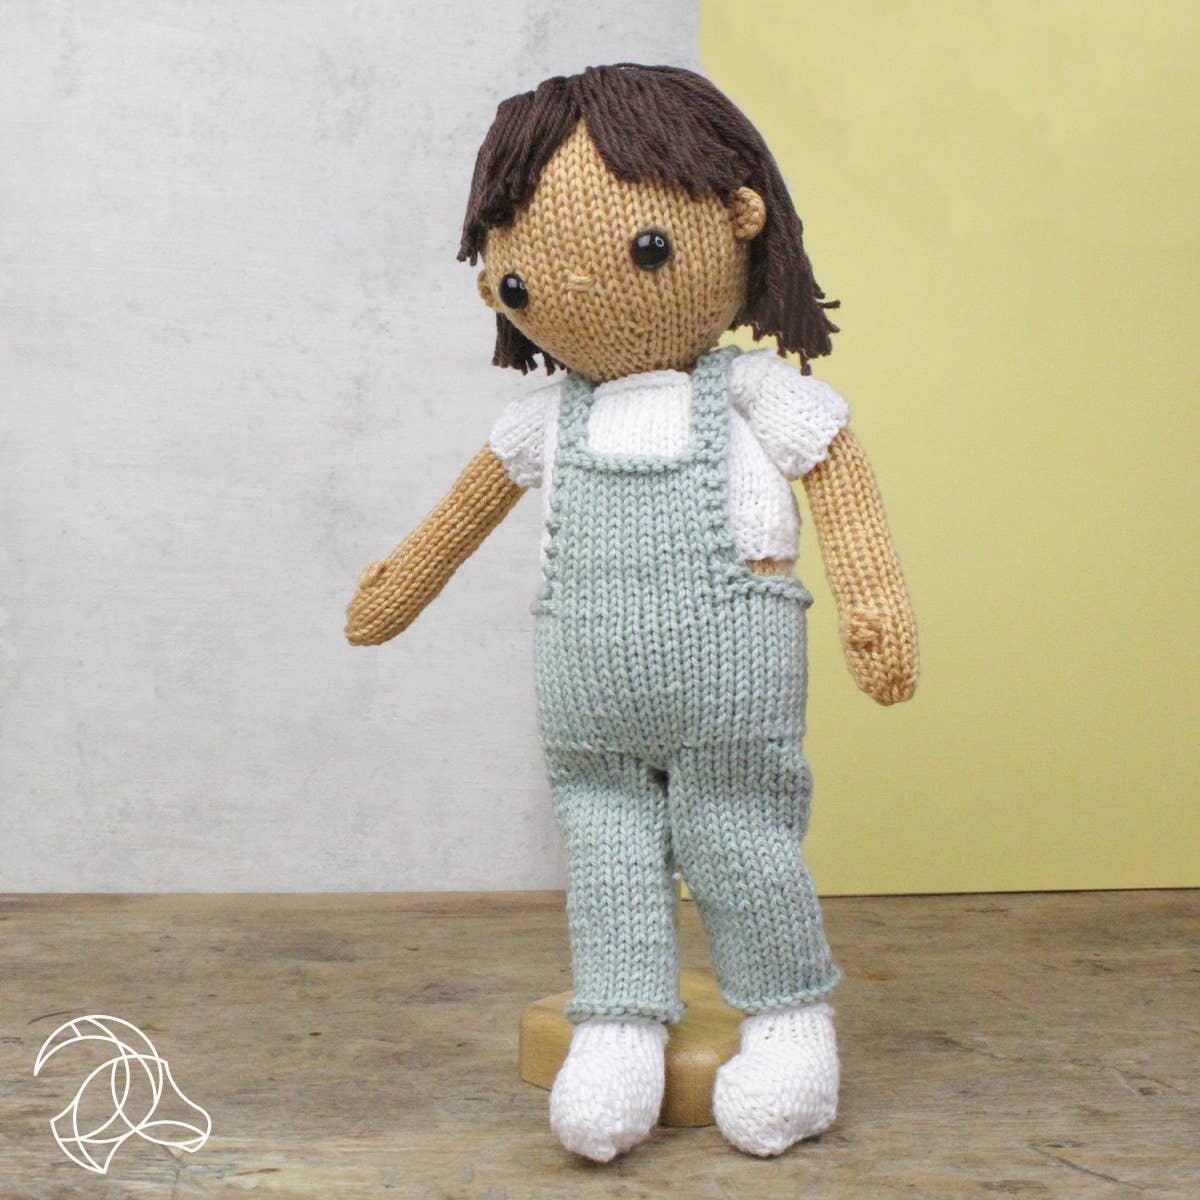 Hardicraft - DIY Knitting Kit - Girl June